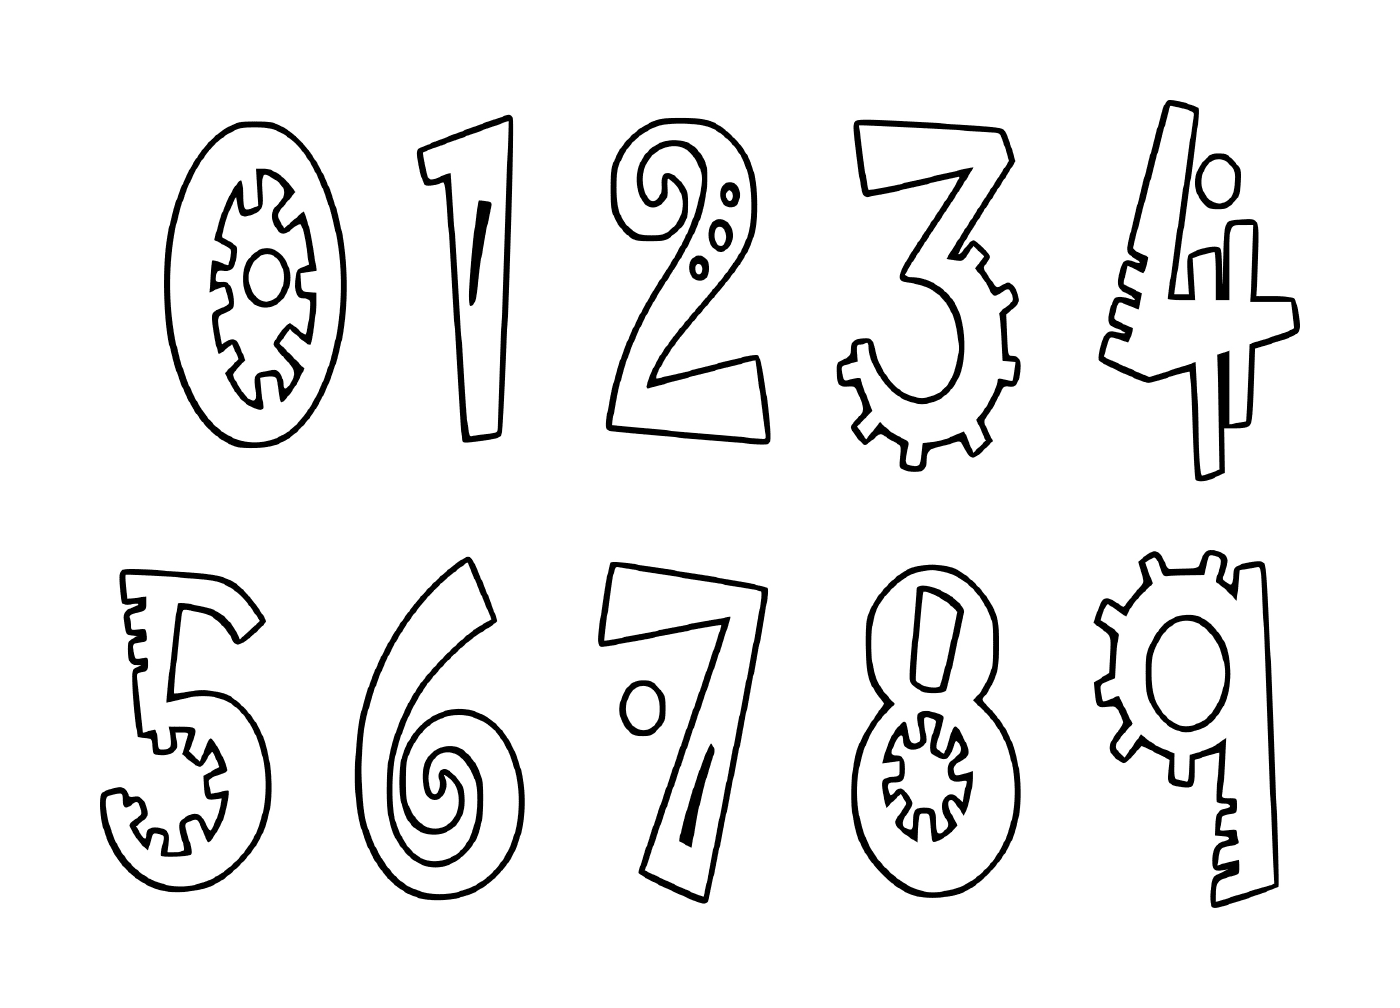  Satz von Ziffern von Null bis neun in schwarzer Tinte gezeichnet 